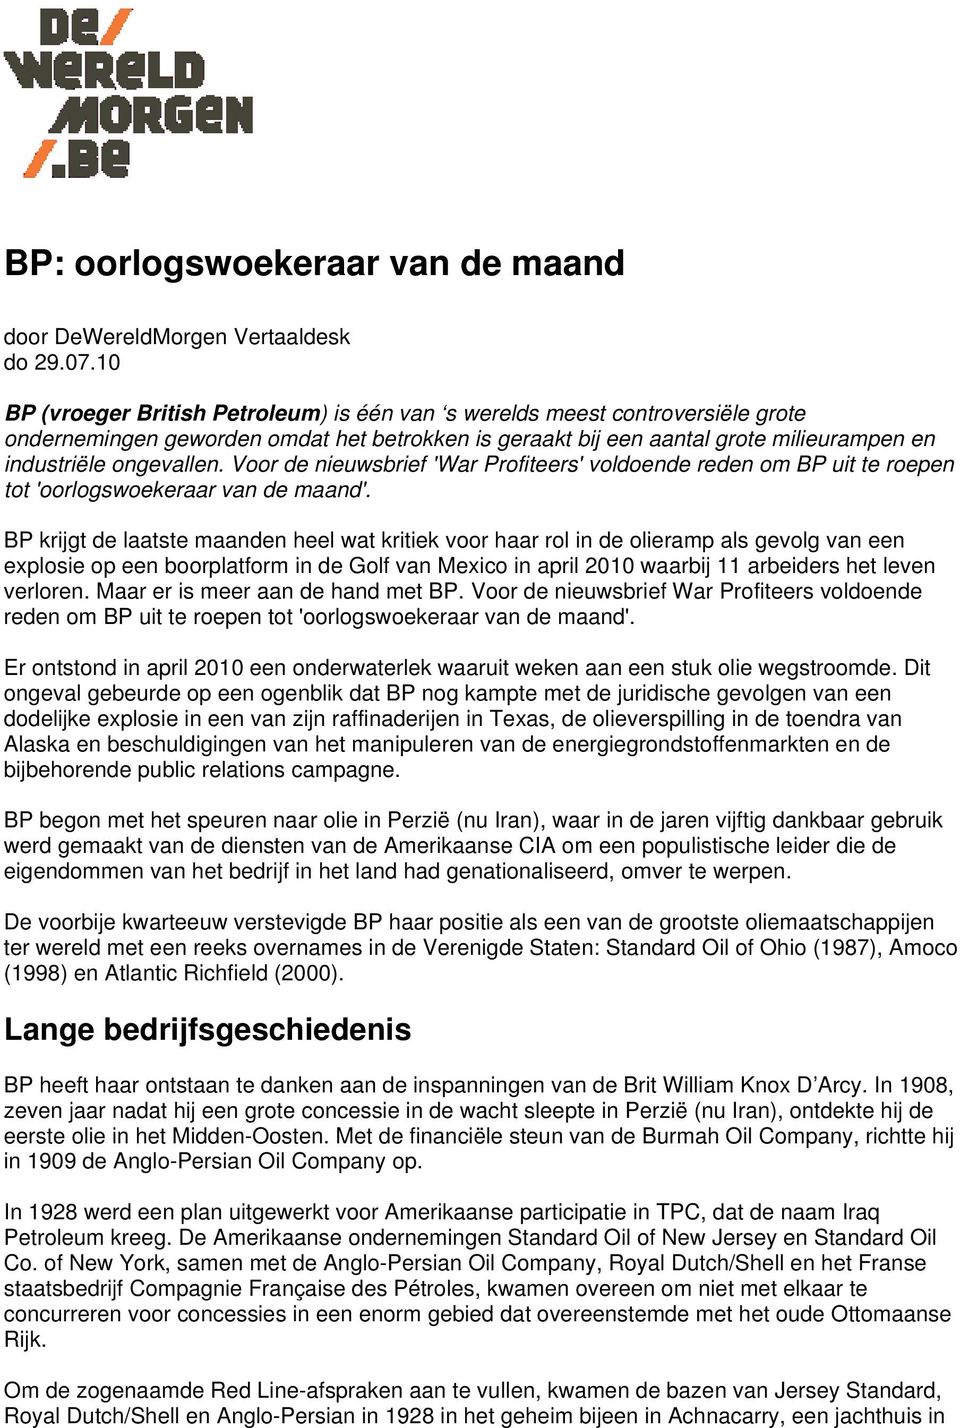 Voor de nieuwsbrief 'War Profiteers' voldoende reden om BP uit te roepen tot 'oorlogswoekeraar van de maand'.